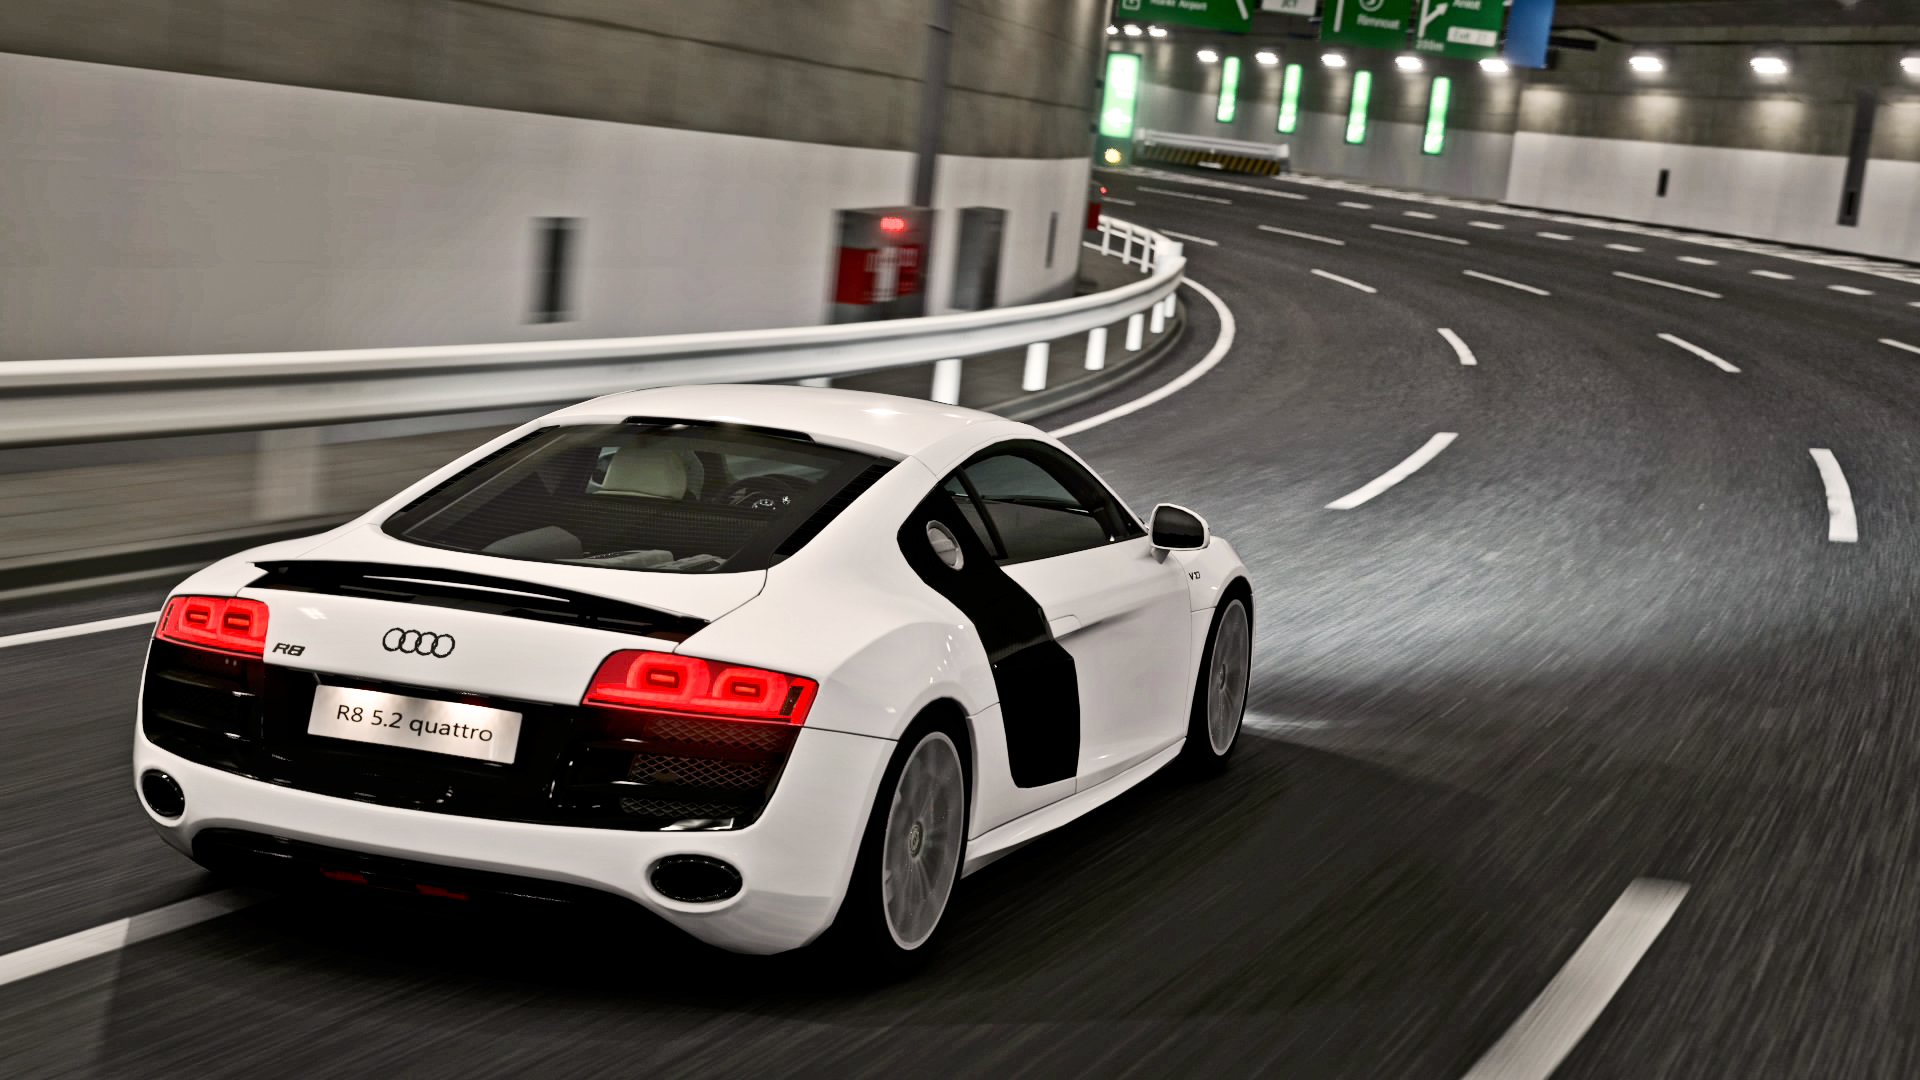 Audi HD Wallpapers 1080p - WallpaperSafari